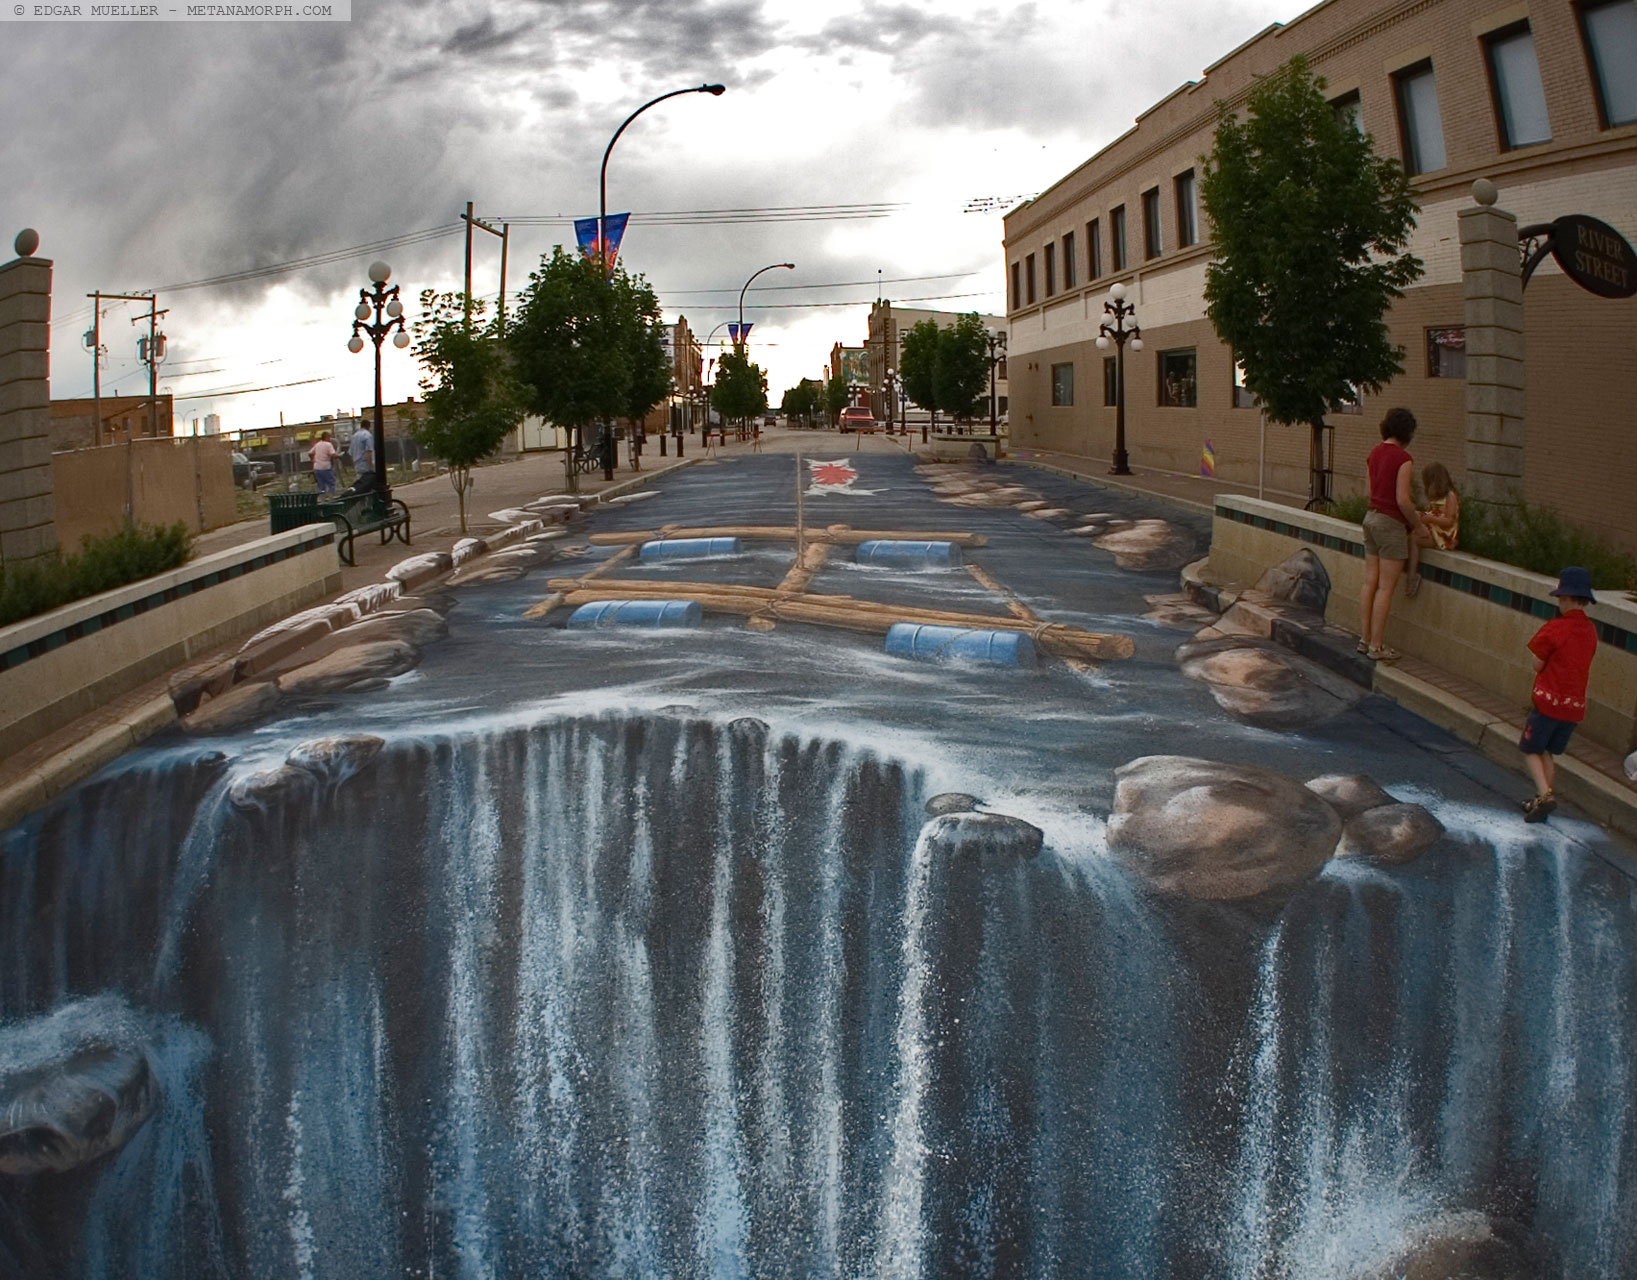 Edgar Müller - 3D sidewalk art 3